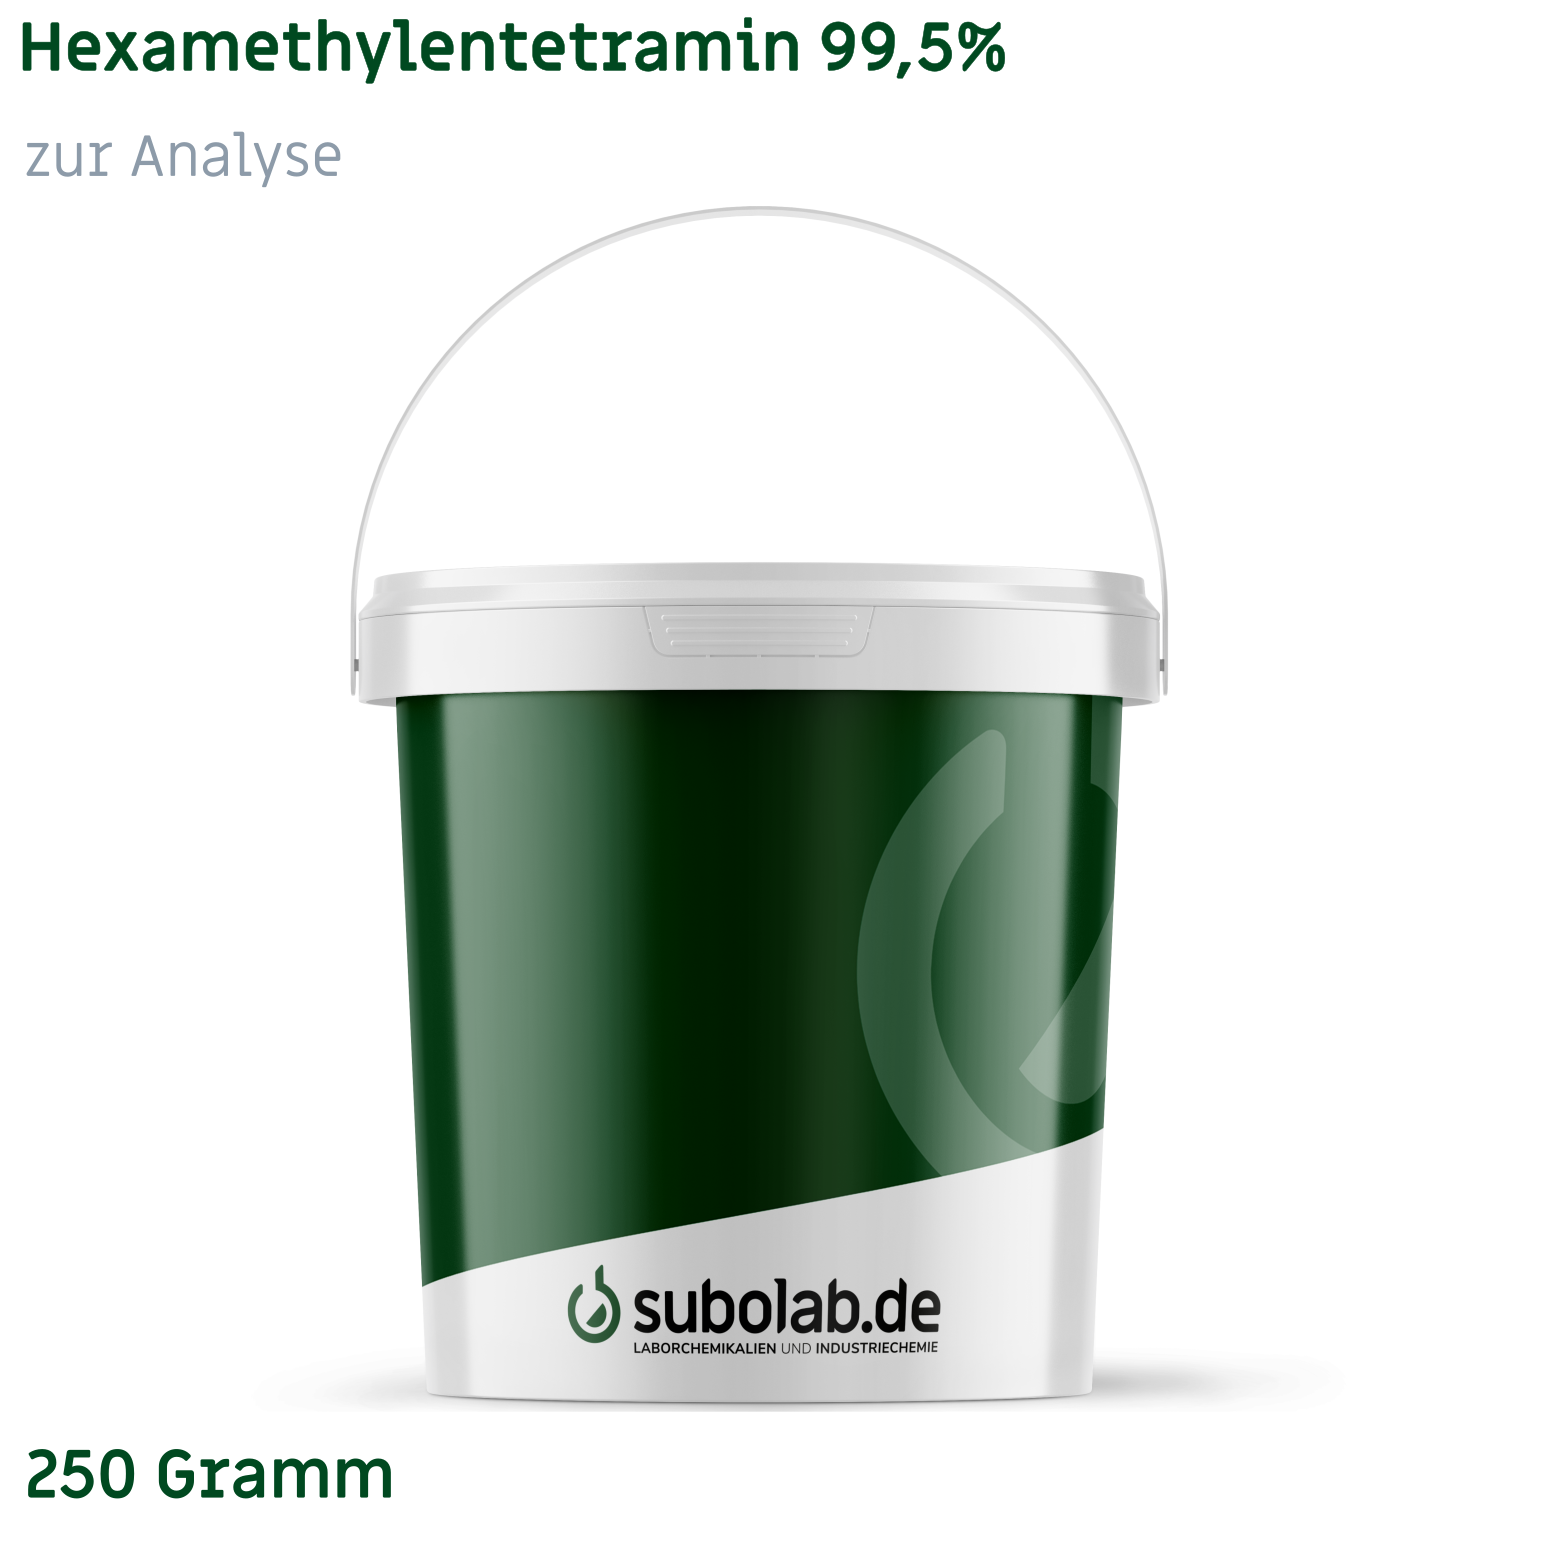 Bild von Hexamethylentetramin 99,5% zur Analyse (250 Gramm)